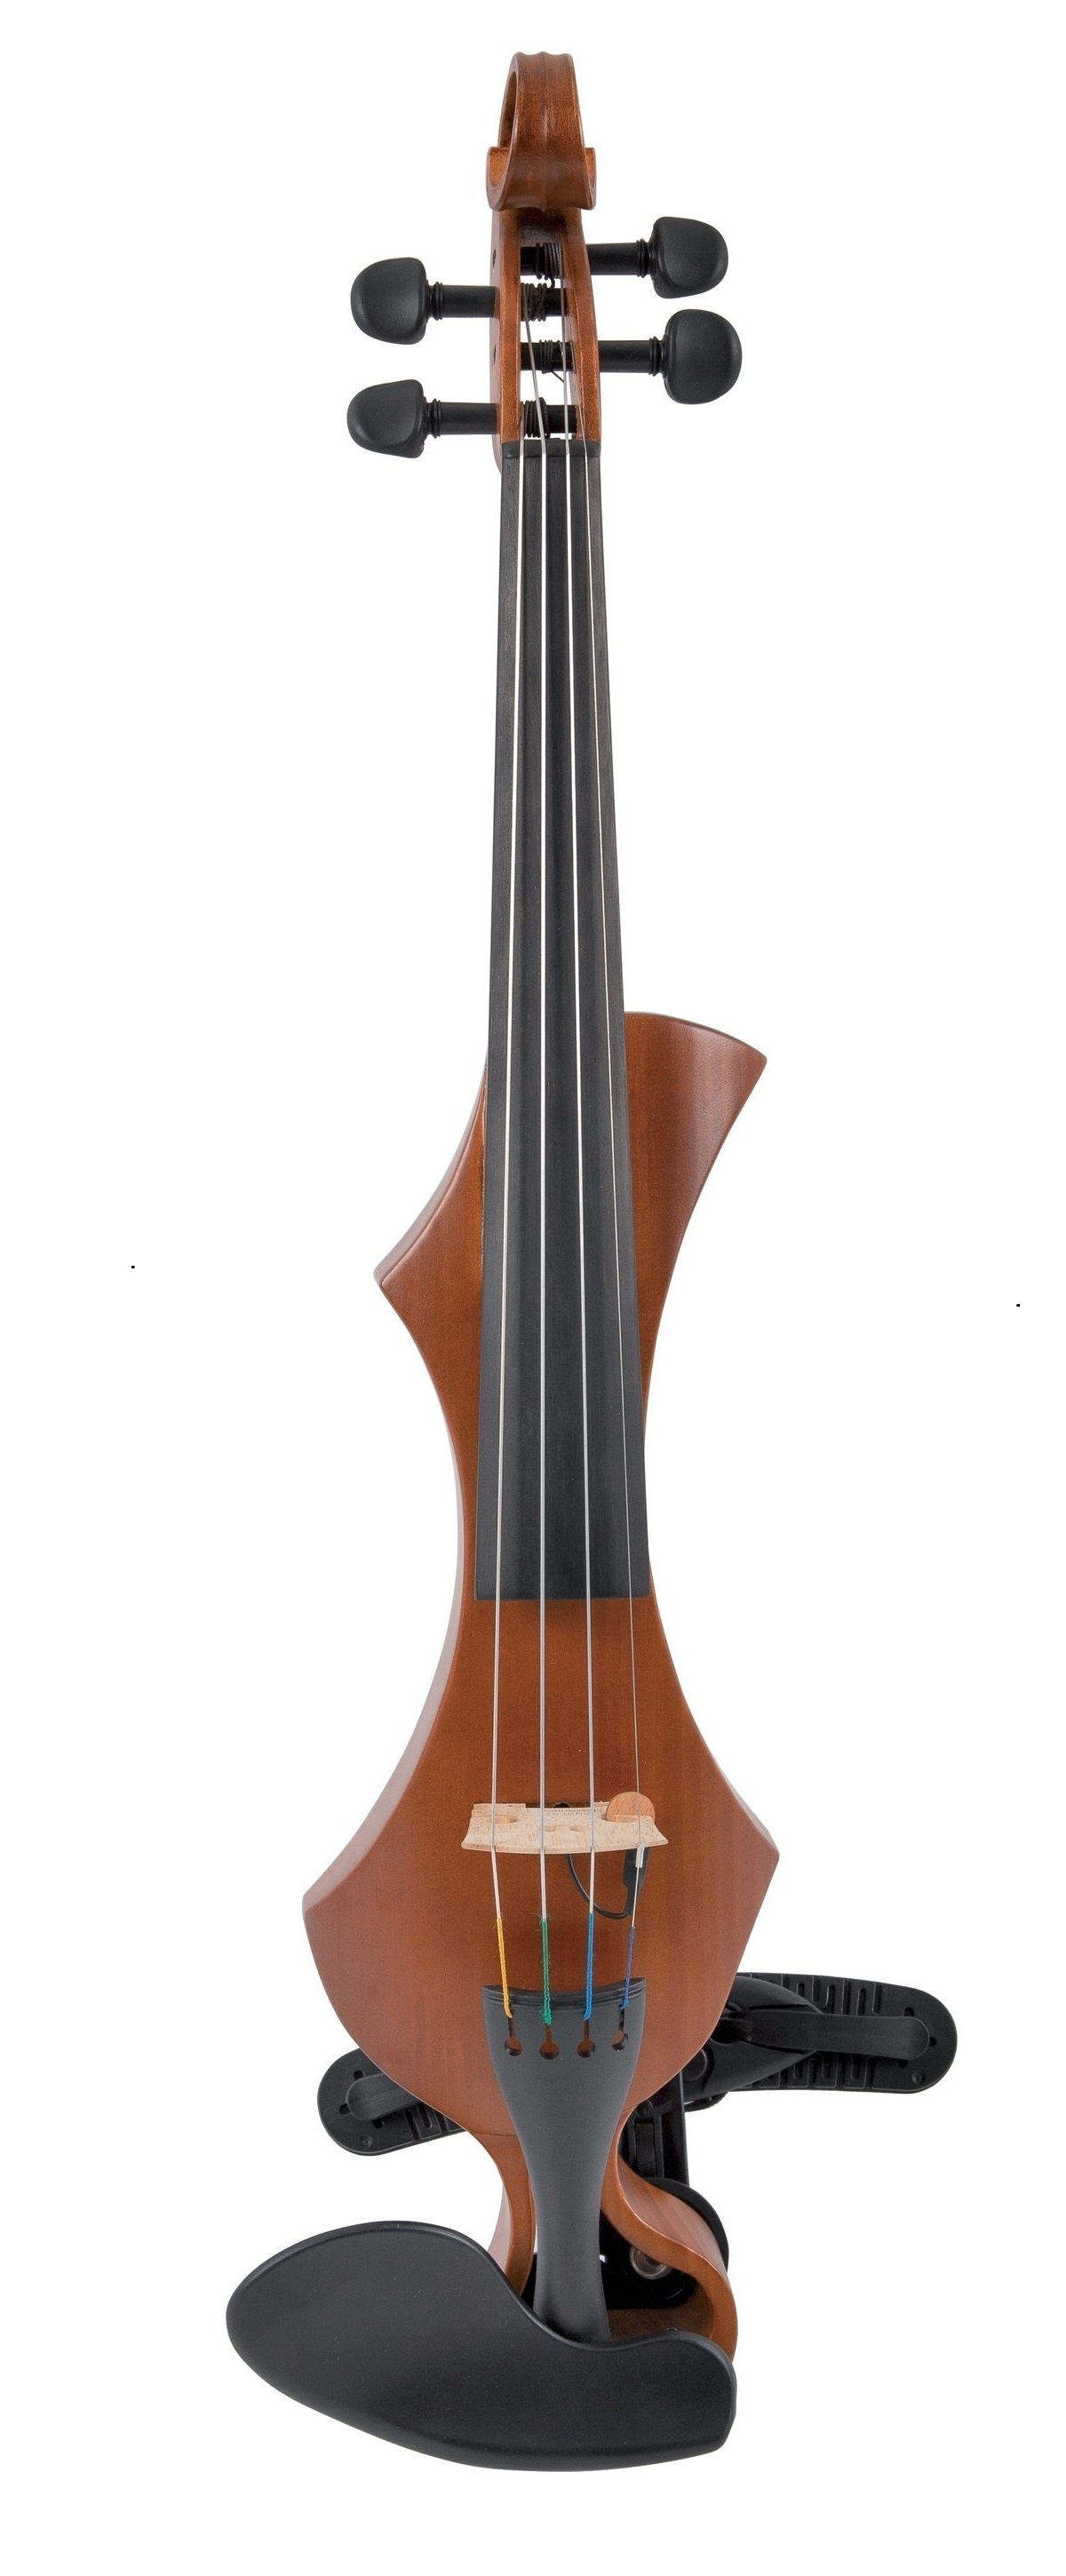 E violins. Электроскрипка Gewa novita 3.0. Gewa e-Violin novita 3.0 Black. Gewa gs400301 e-Violin novita 3.0 Red-Brown электроскрипка 4-х стр.. Gewa 3/4.